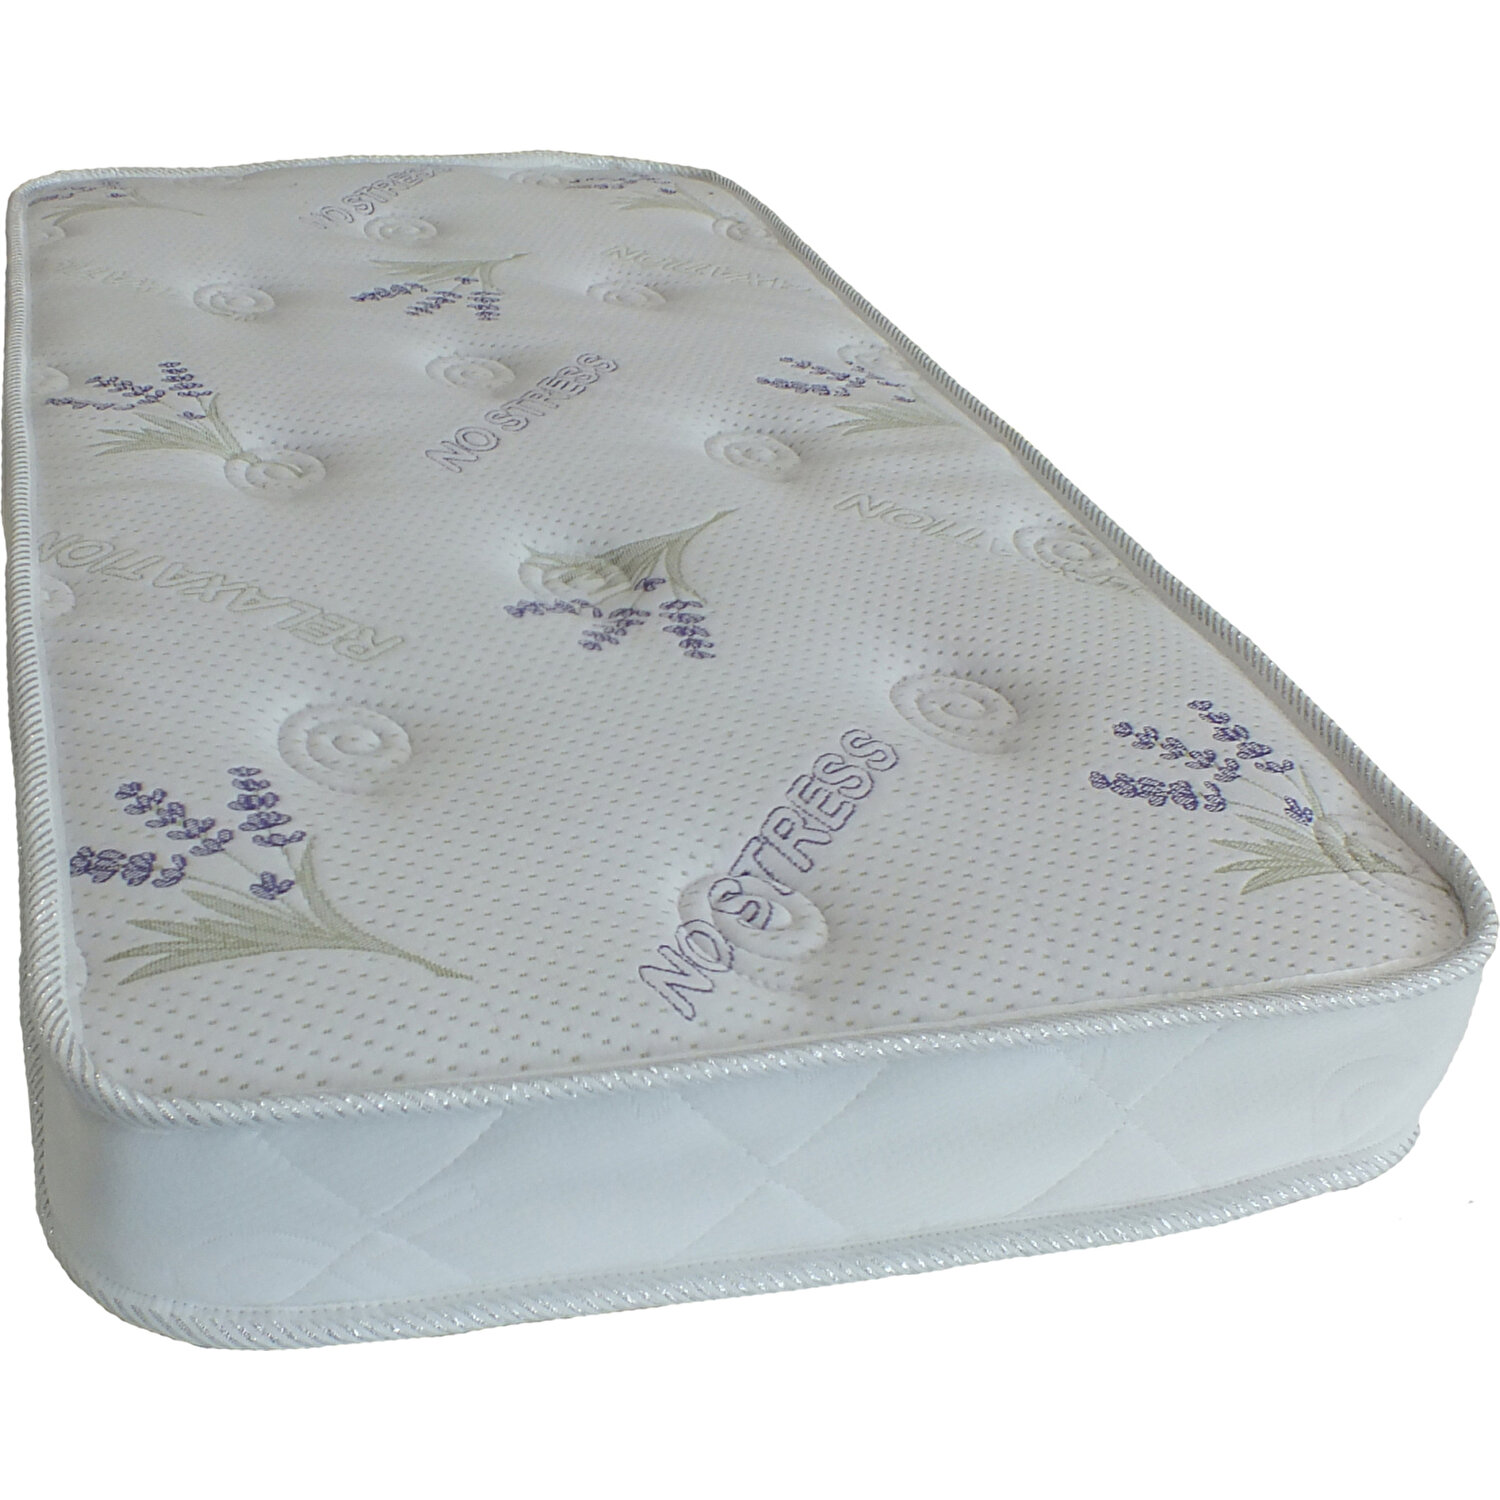 Dgs Comfort Bebek Yatağı Sünger Yatak 60X120 Fiyatı